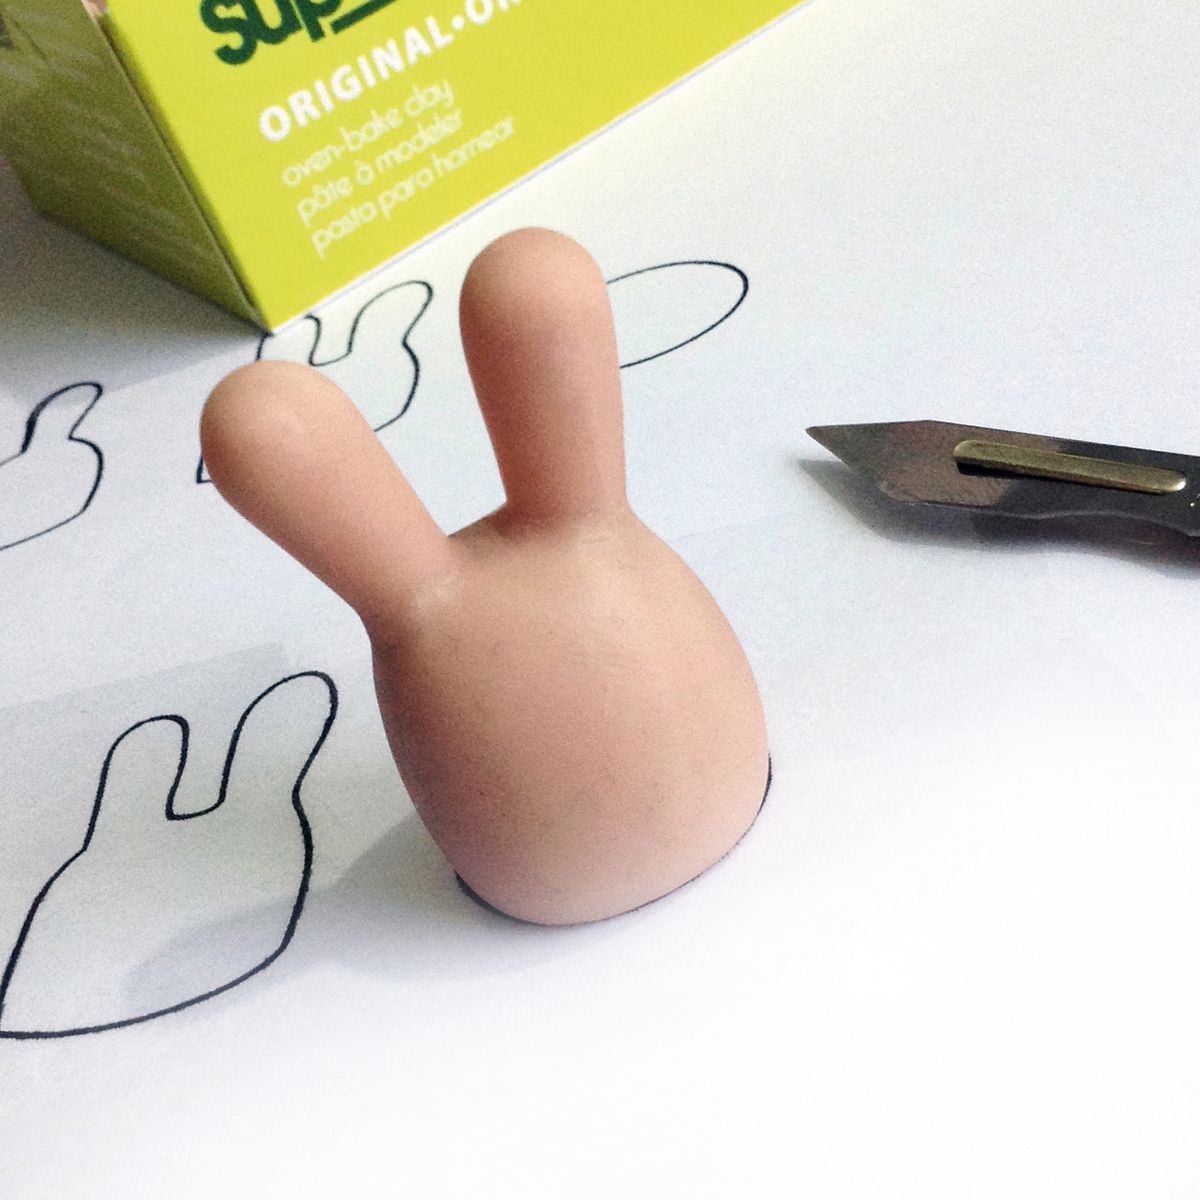 Super Sculpey Ton wird verwendet, um einen Meister für das Kunstspielzeug zu machen